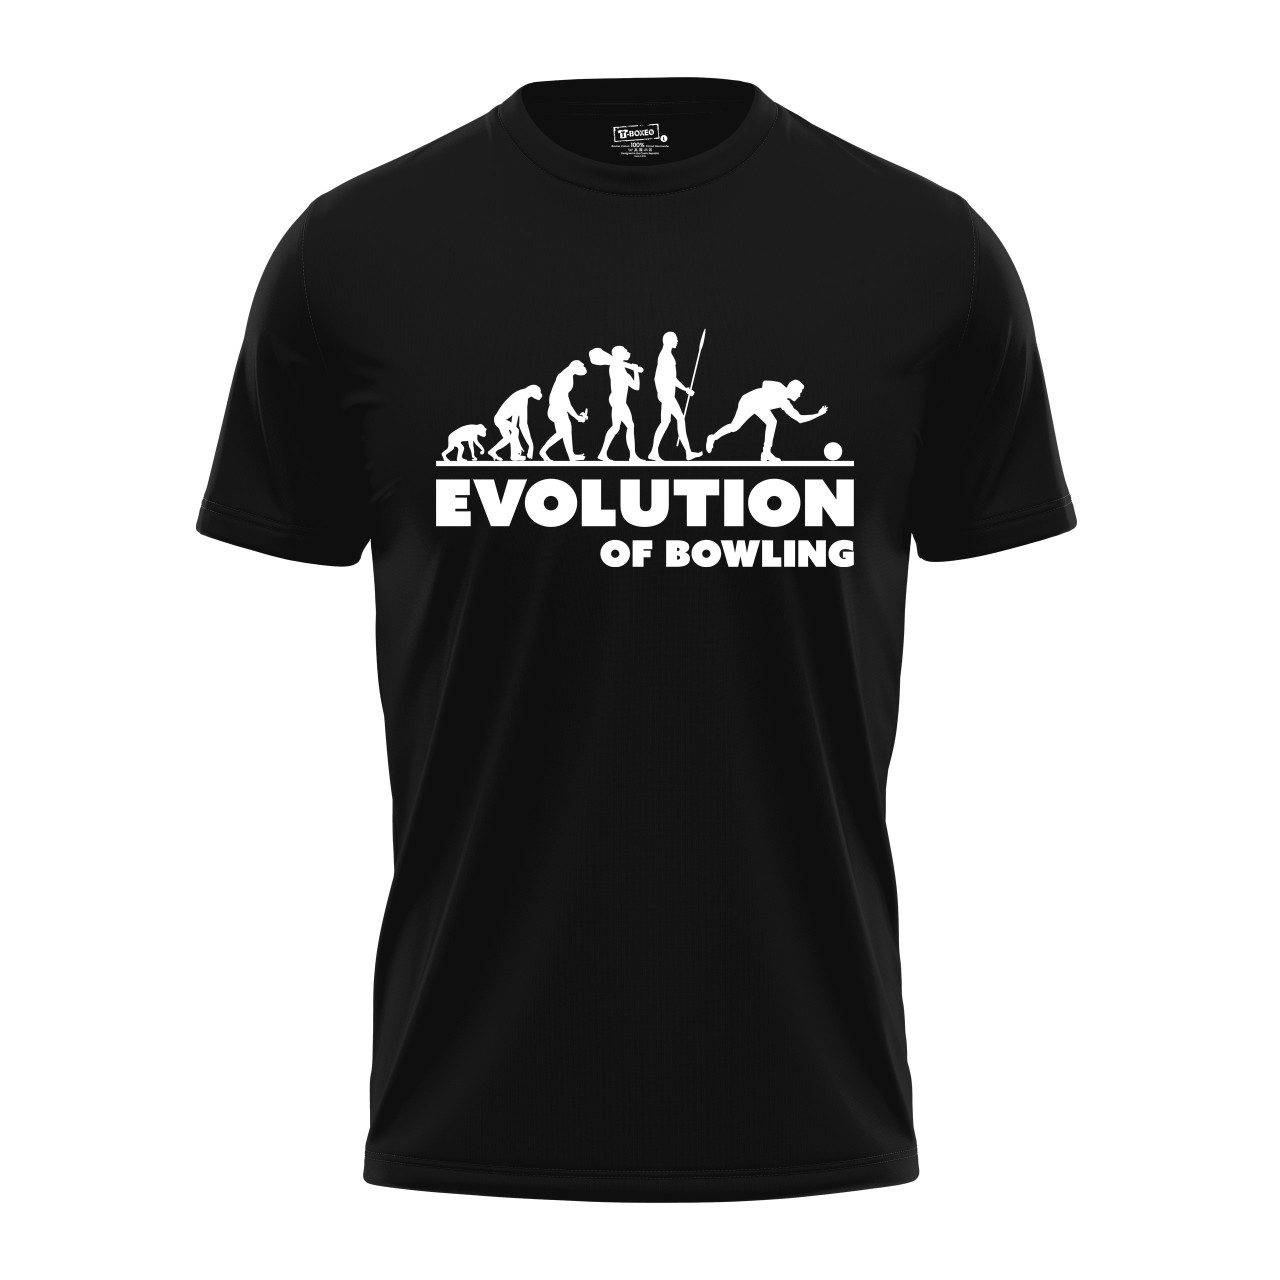 Pánské tričko s potiskem "Evoluce Hráče bowlingu"